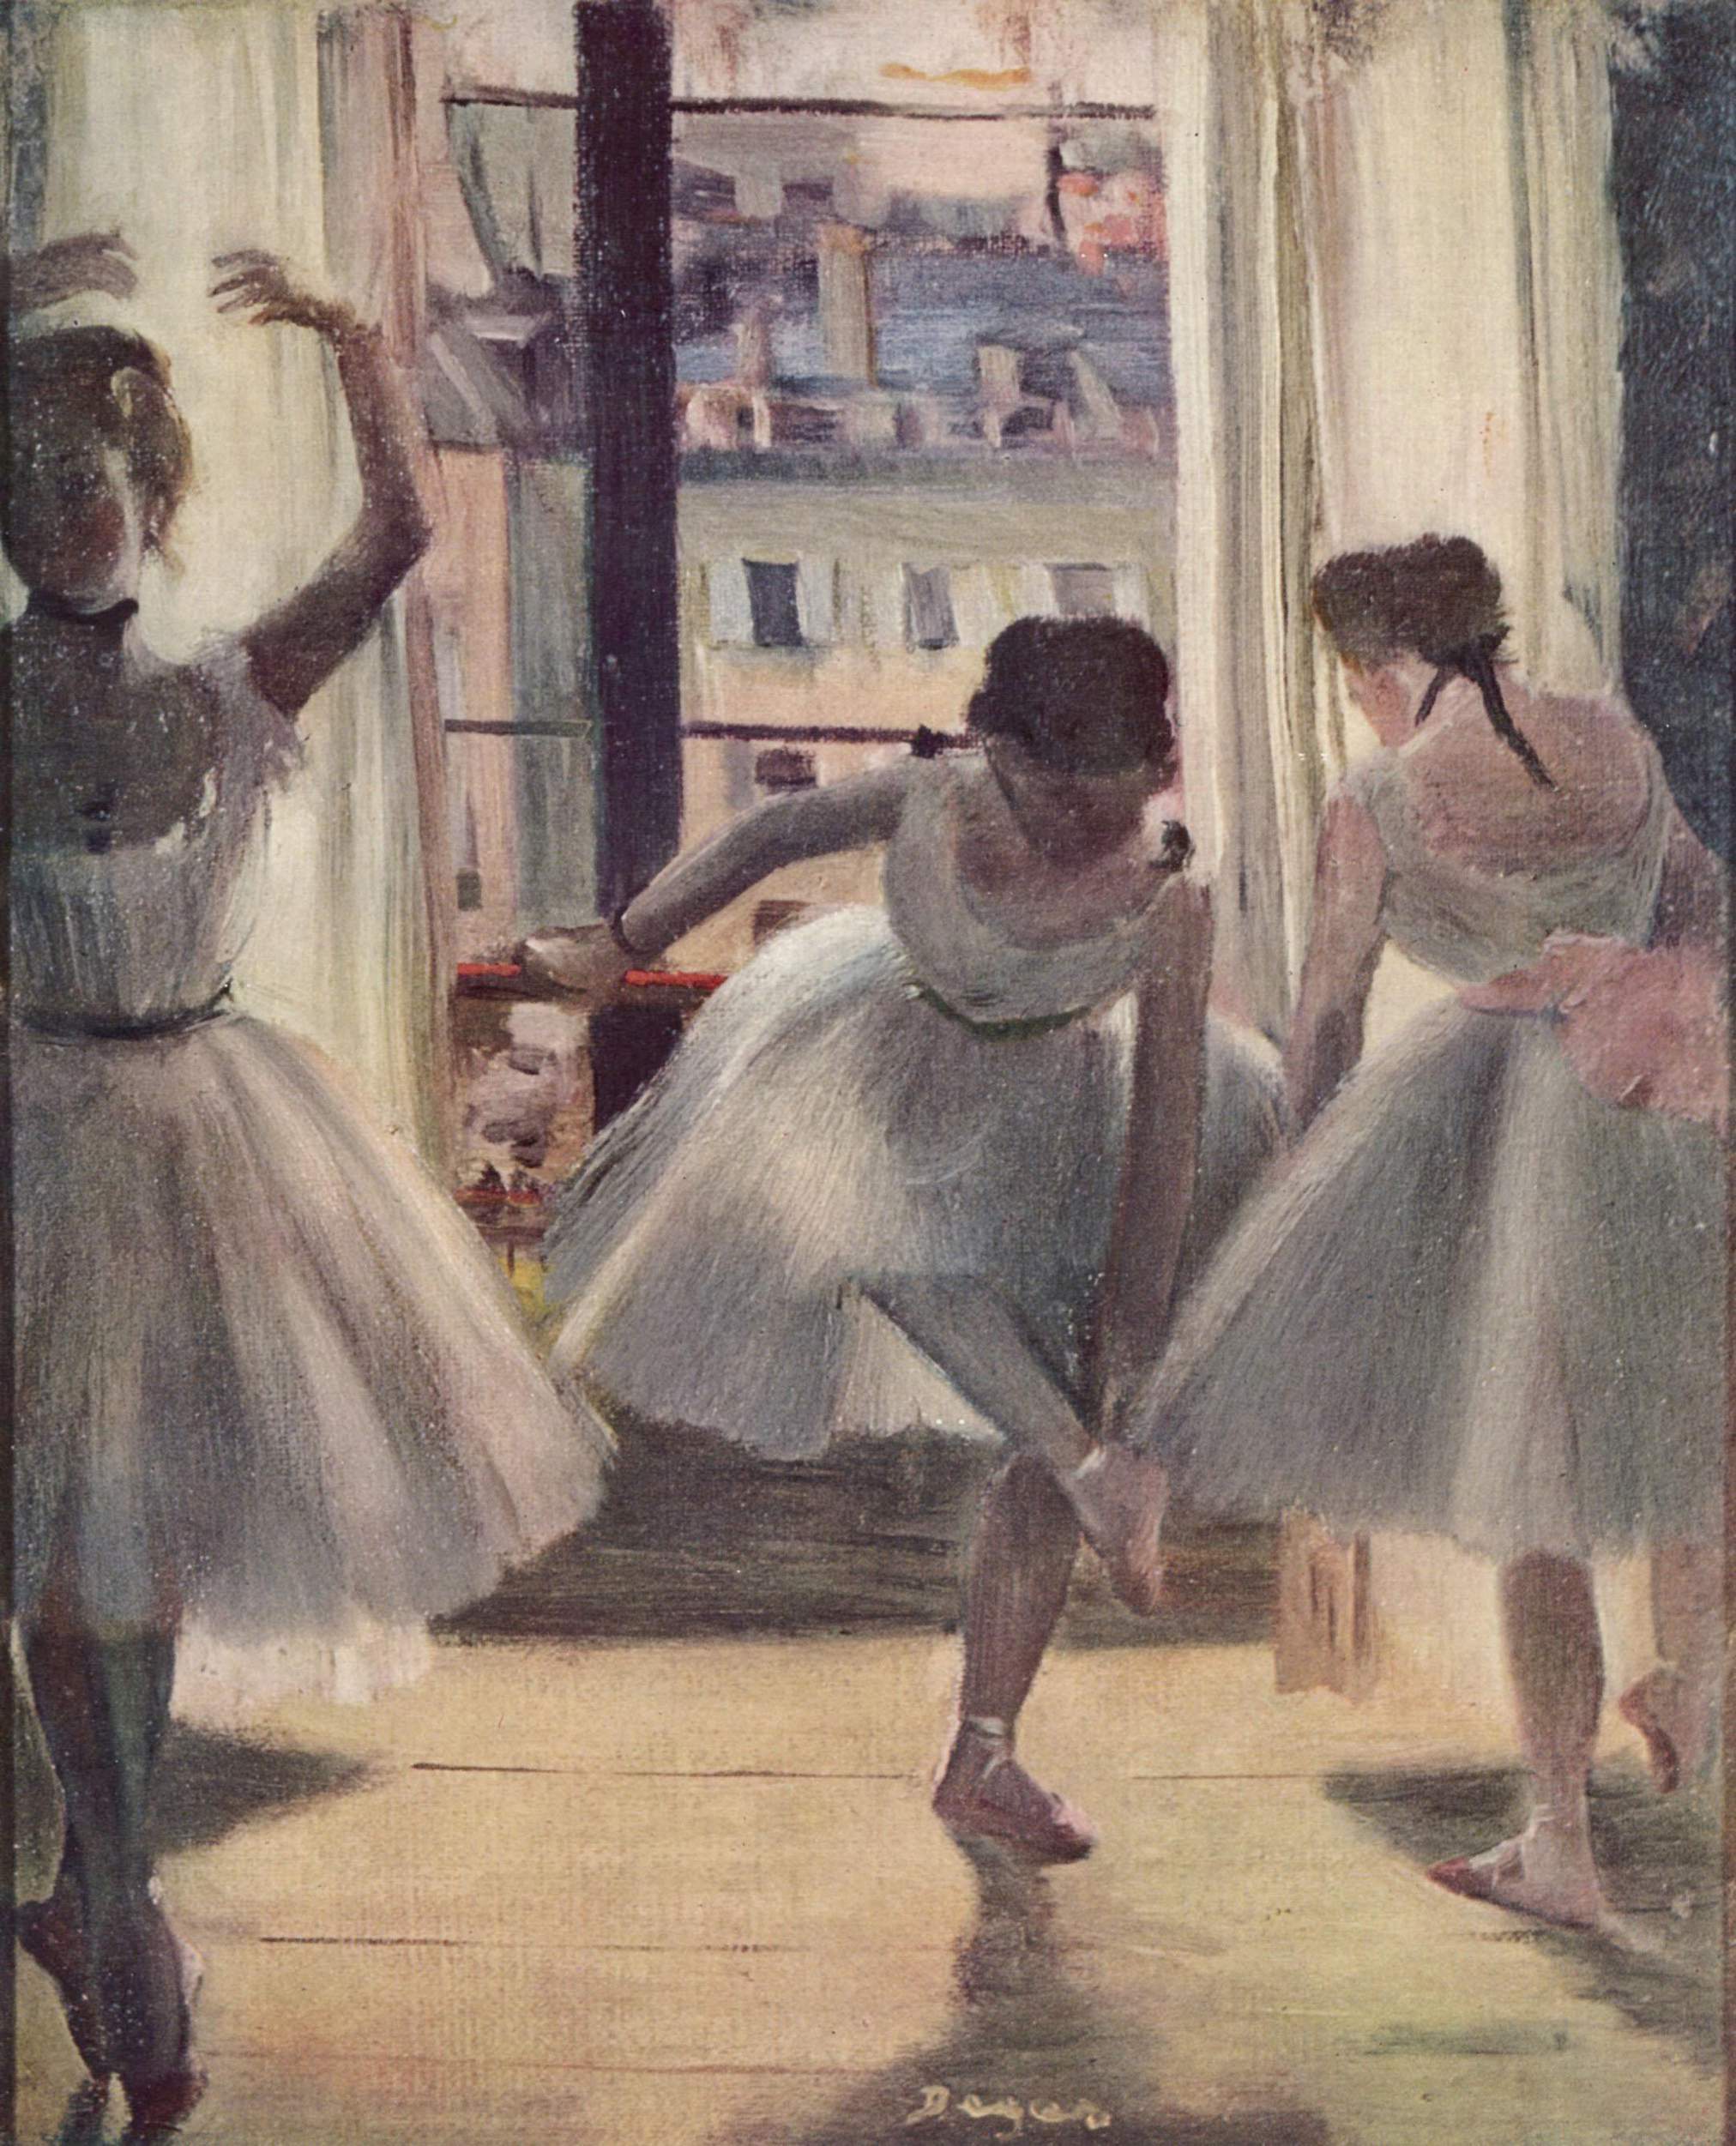 Drei Tänzer in einem Übungssaal by Edgar Degas - 1880 - - Private Sammlung